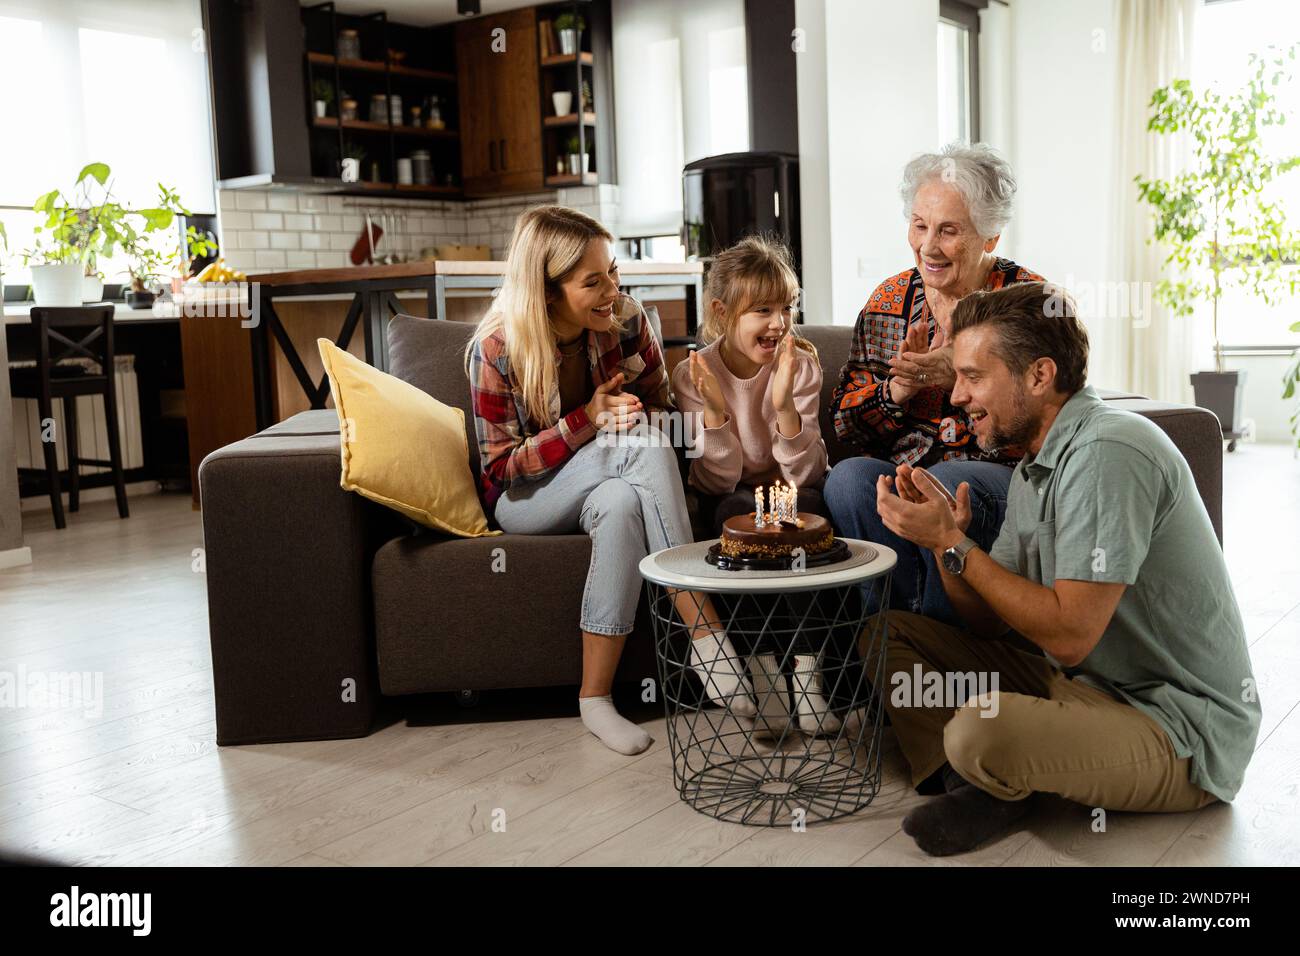 Una scena emozionante si svolge mentre una famiglia multigenerazionale si riunisce su un divano per presentare una torta di compleanno a una nonna adorata, creando ricordi indimenticabili Foto Stock